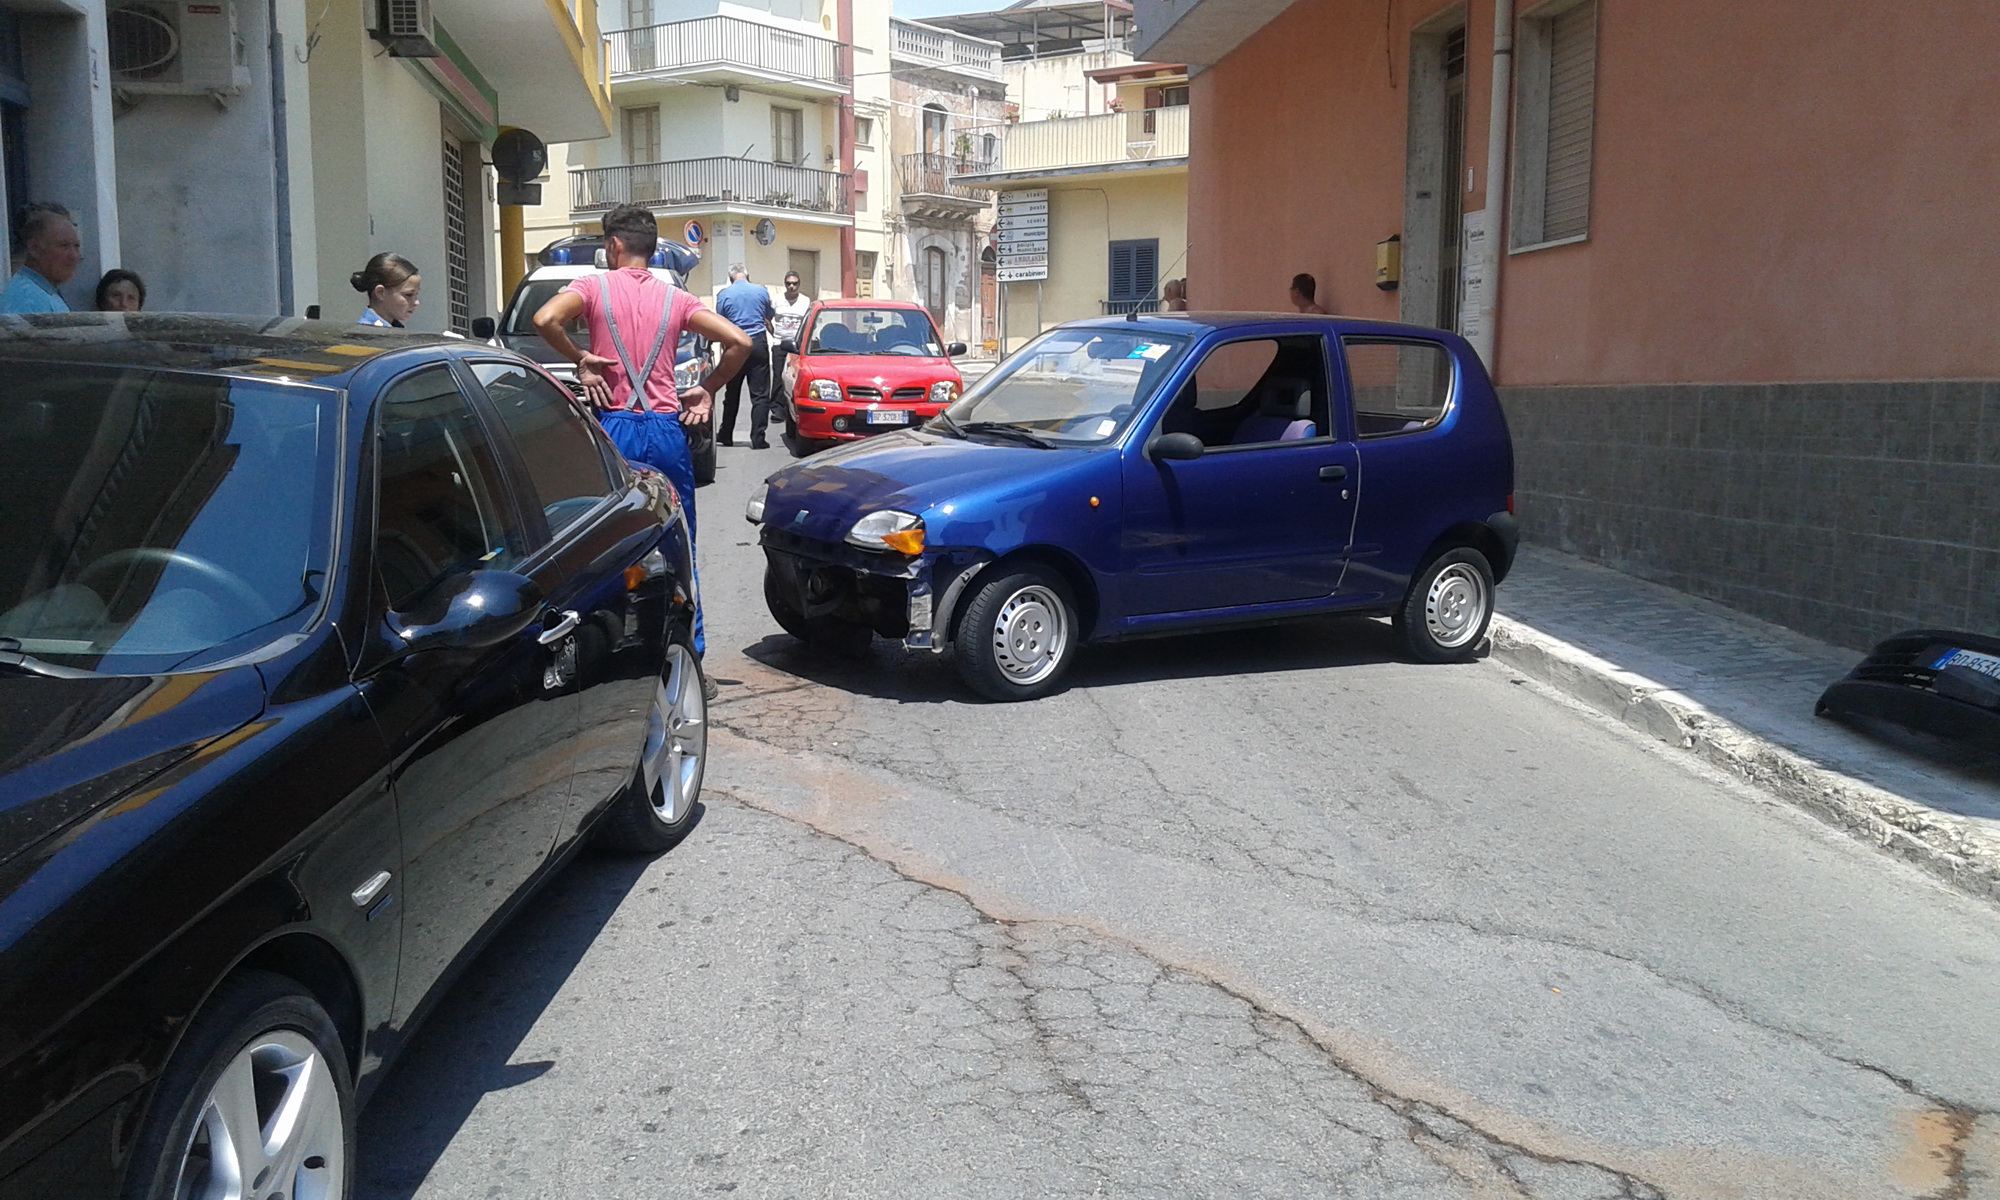  Santa Croce – Incidente in via Mazzarelli, impatto tra due auto: traffico in tilt per alcuni minuti